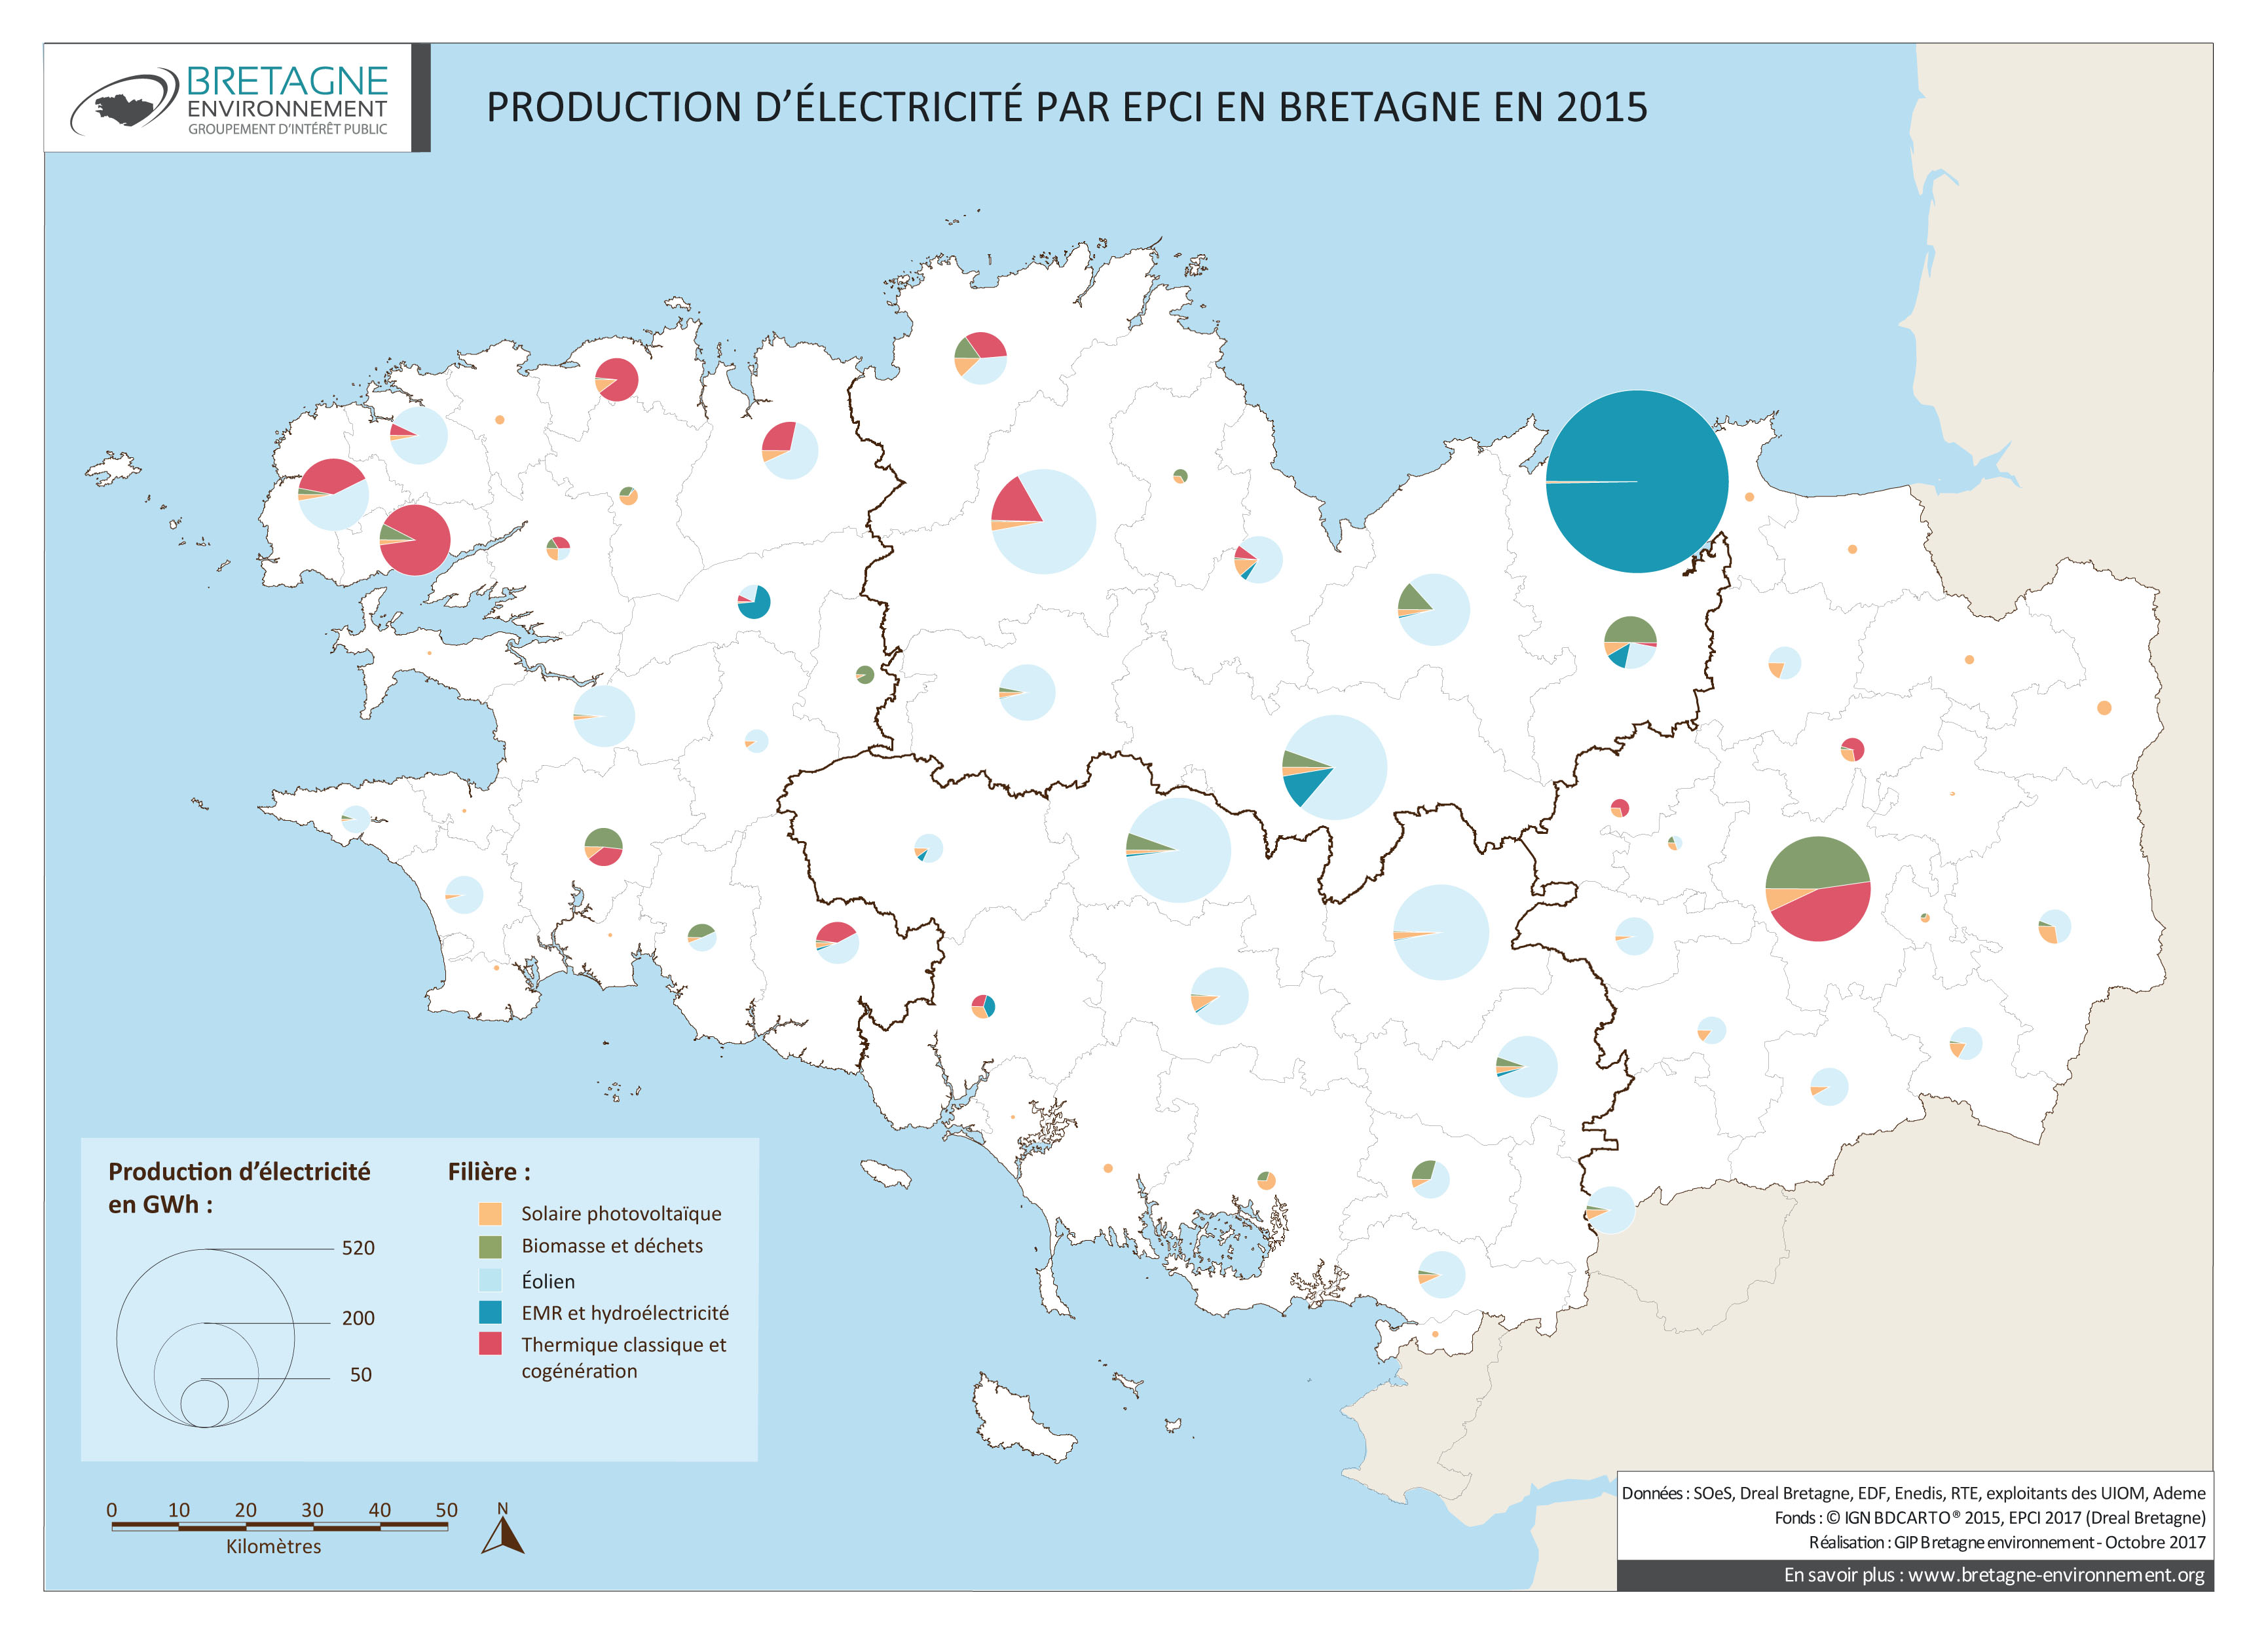 Production d'électricité en 2011